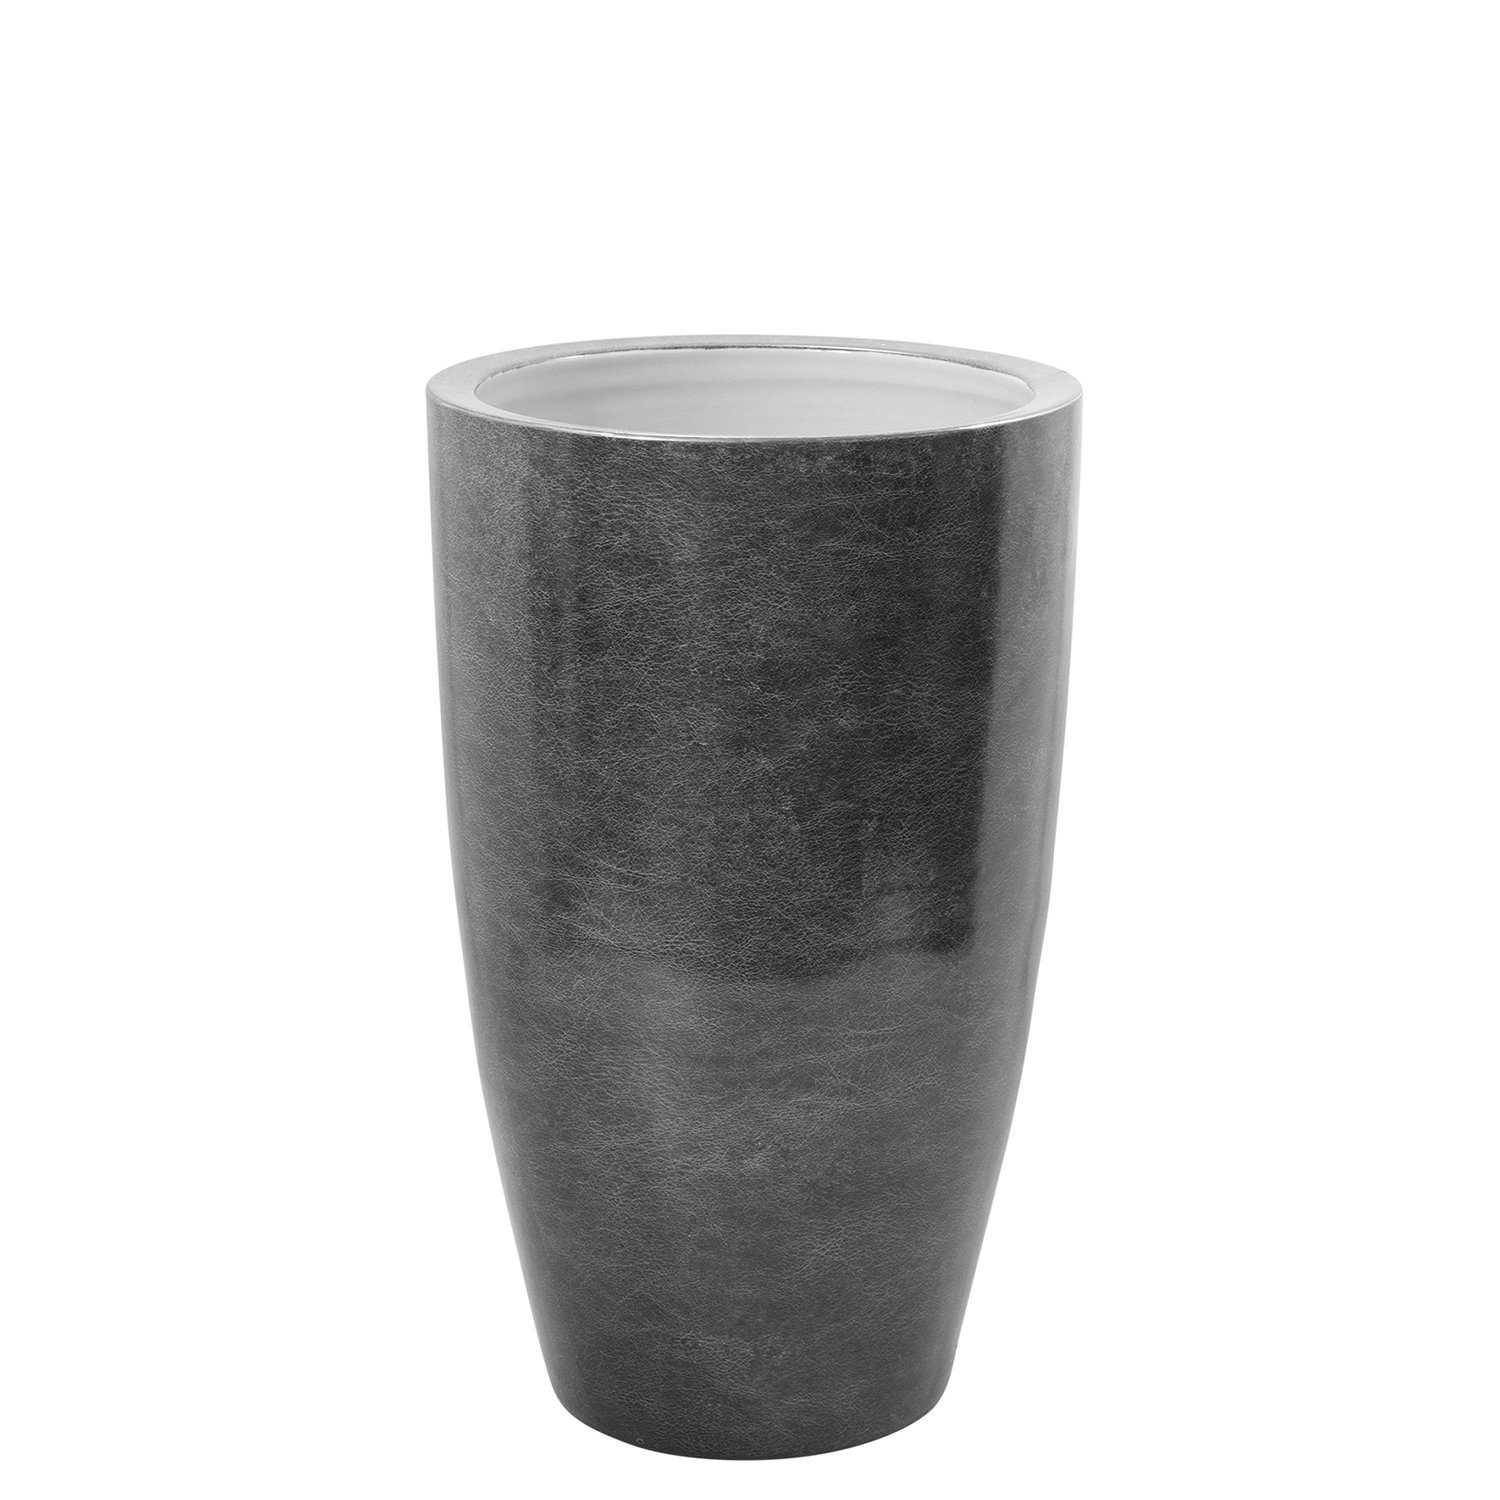 Fink Dekovase Vase MELUA - grau - Porzellan - H.51cm x Ø 30cm, Durchmesser Öffnung ca. 25cm - Fuß Durchmesser ca.19cm